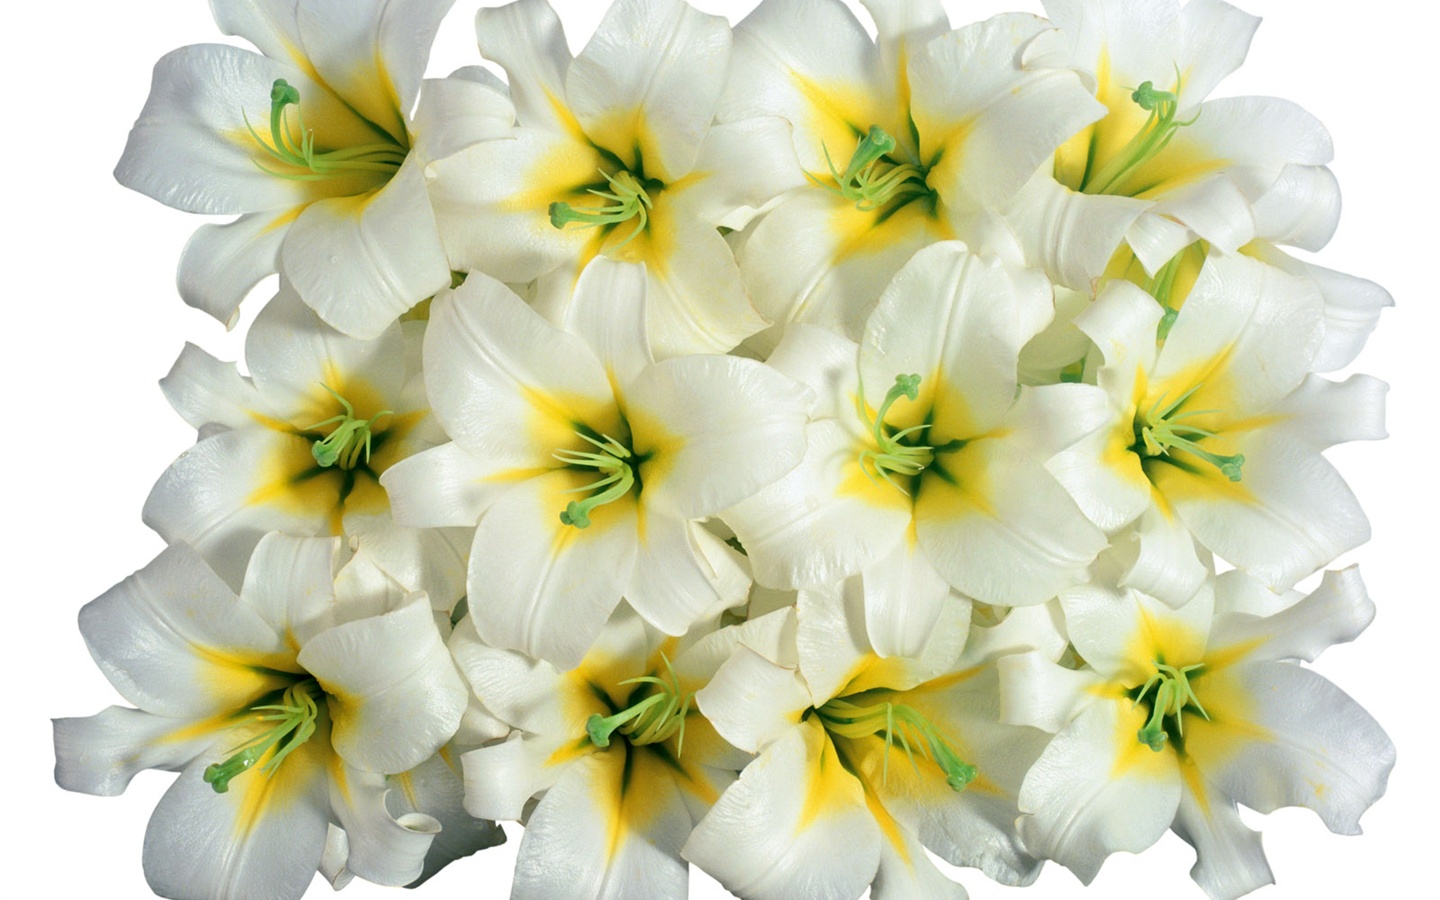 눈같이 흰 꽃 벽지 #3 - 1440x900